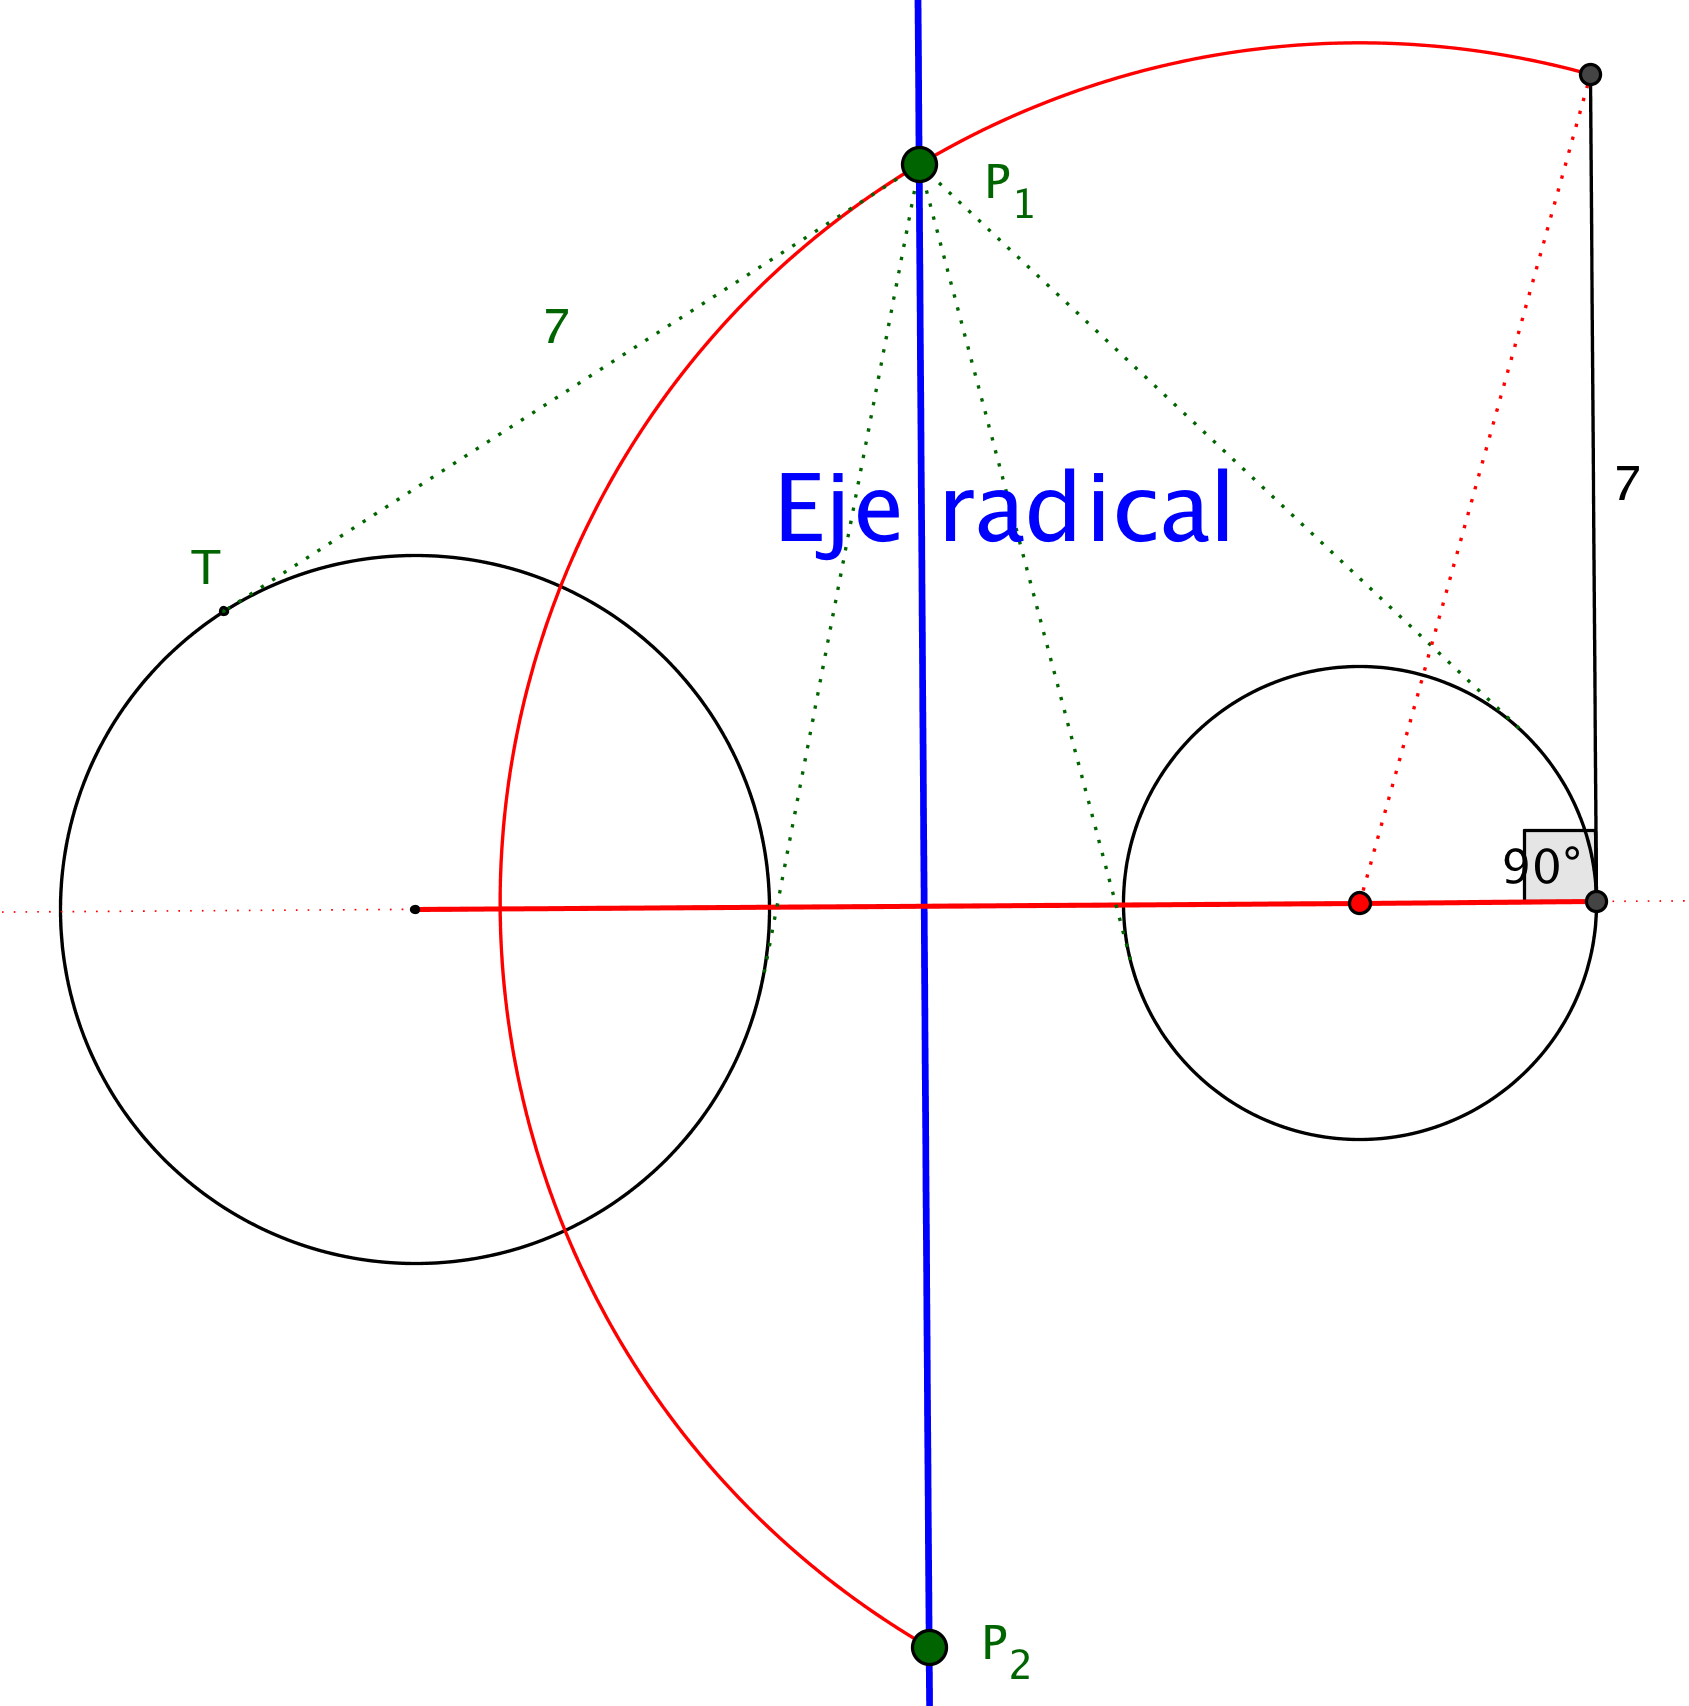 rectas tangentes longitud dada eje radical.png